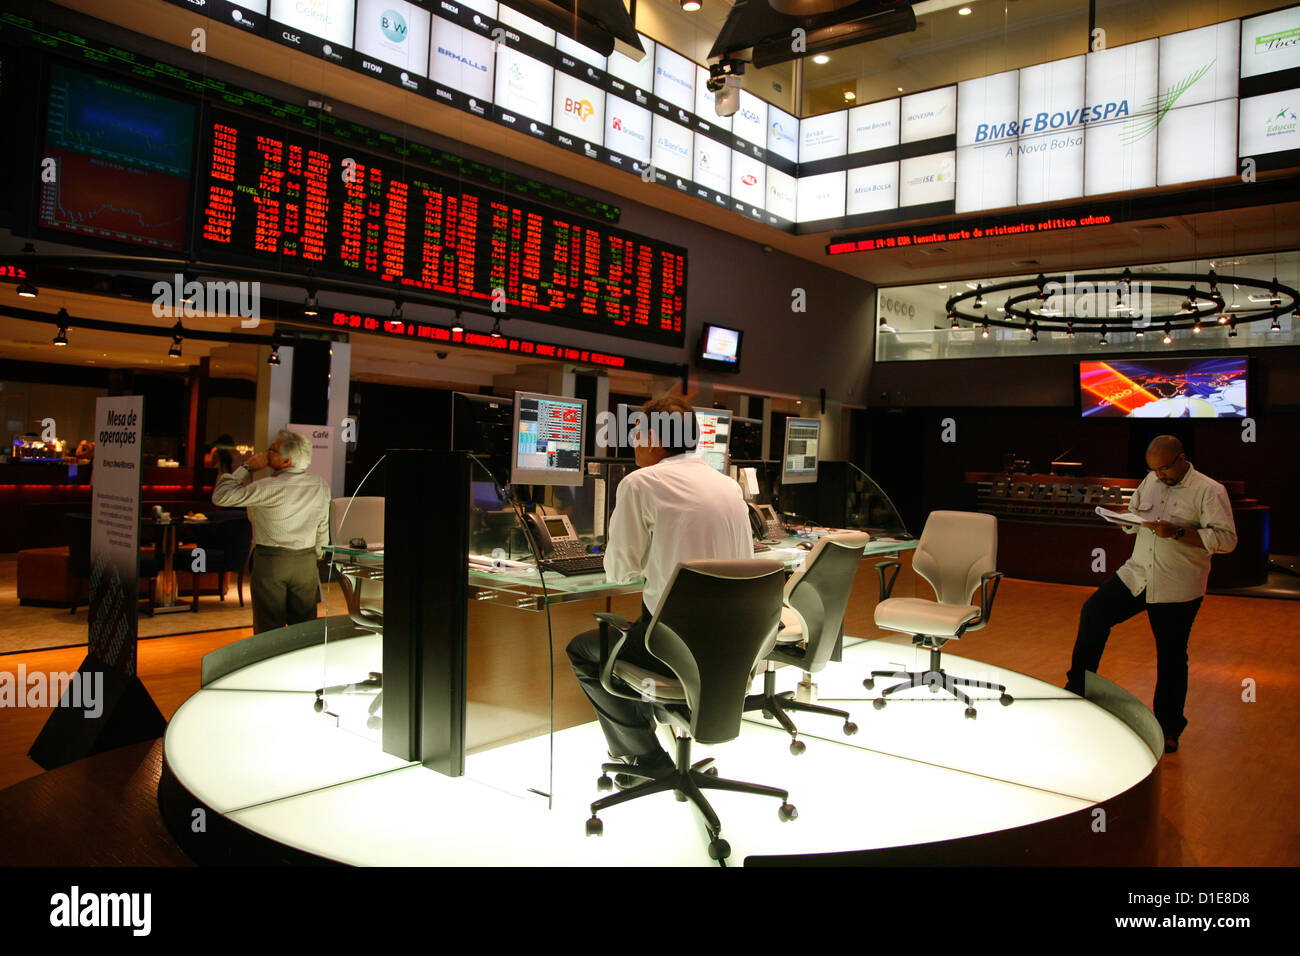 La Bovespa Stock Exchange, Sao Paulo, Brésil, Amérique du Sud Banque D'Images